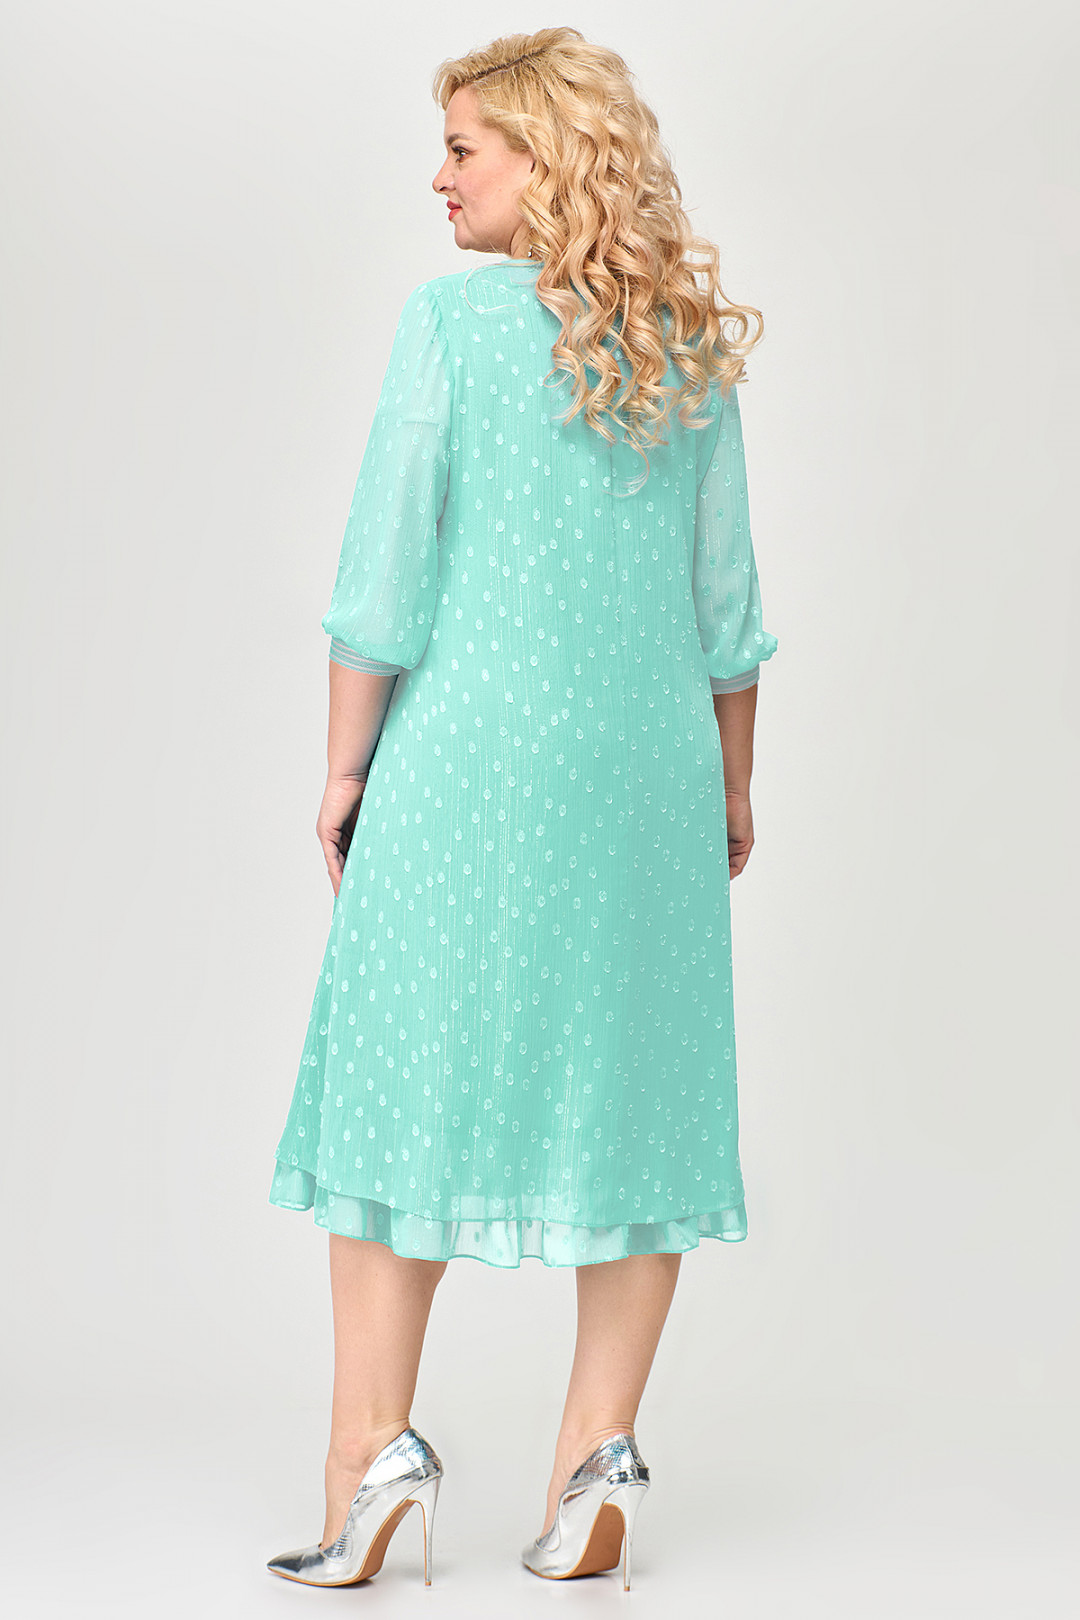 Платье ALGRANDA (Новелла Шарм) A3814-2-7